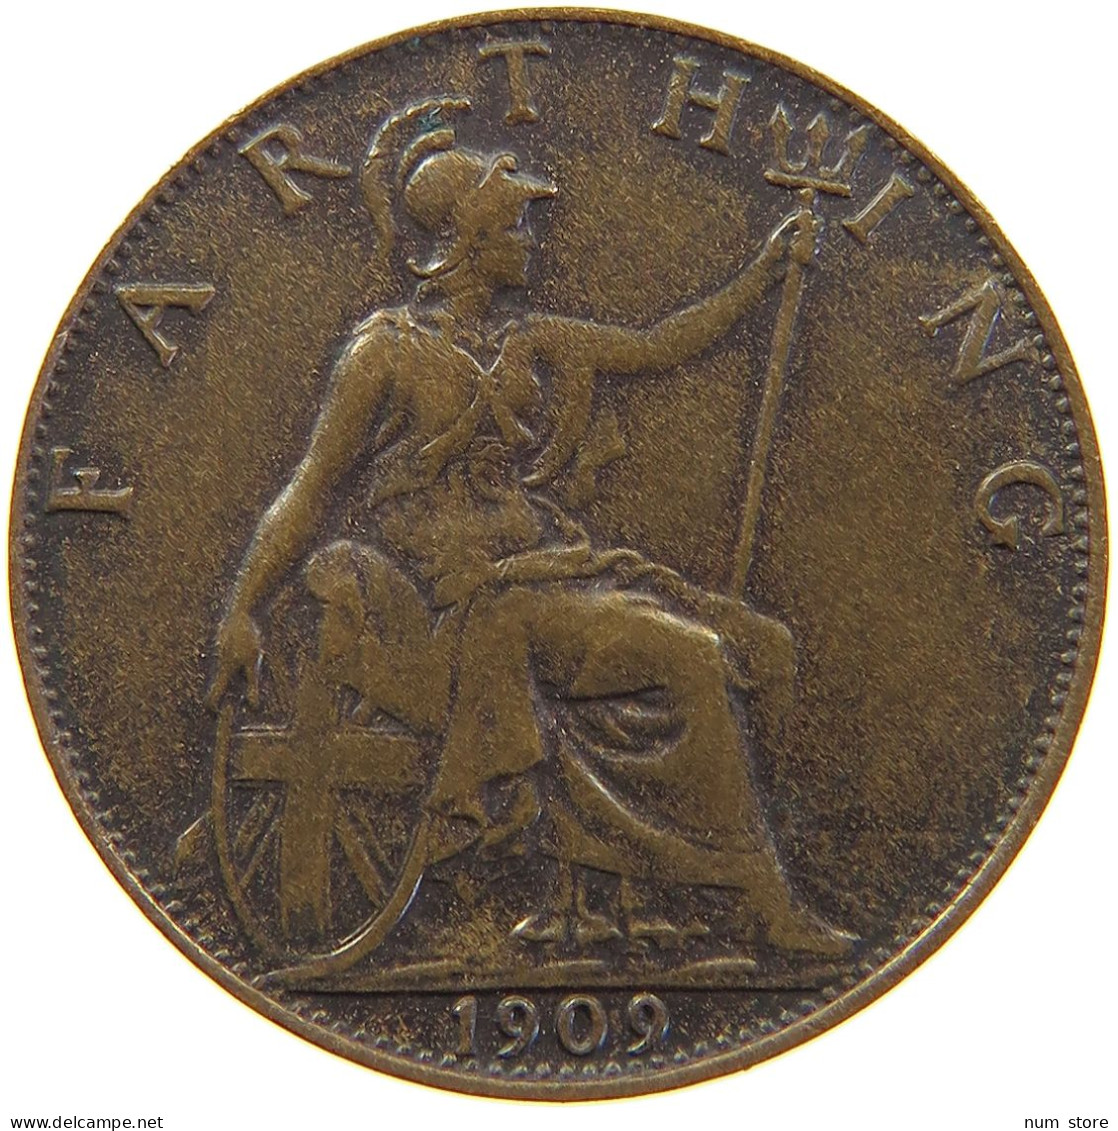 GREAT BRITAIN FARTHING 1909 Edward VII., 1901 - 1910 #c063 0273 - B. 1 Farthing